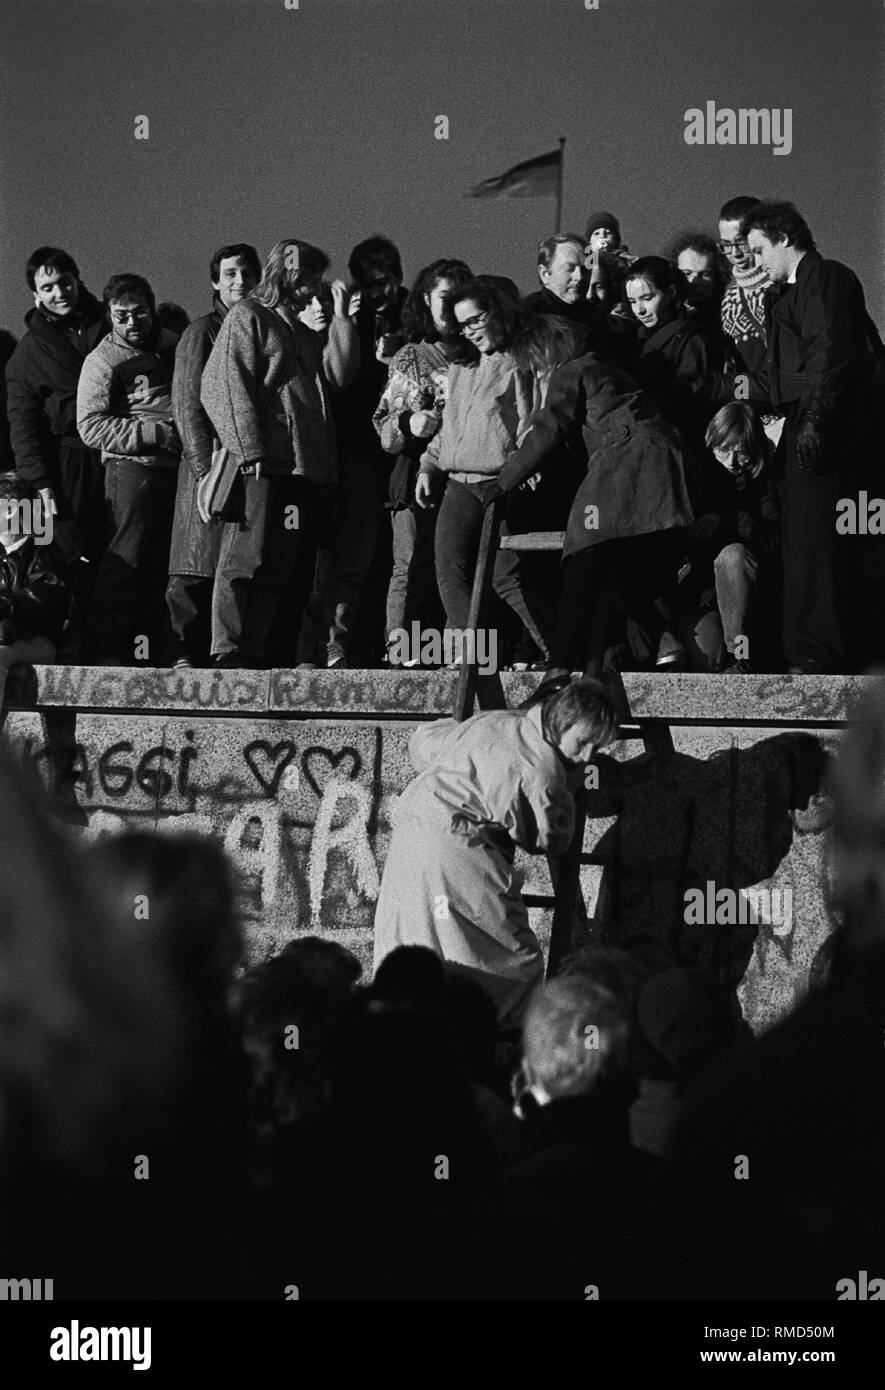 Fröhliche Festival auf der Mauer am Brandenburger Tor, Menschen aus Ost und West an der Wand stehen, einige sind nach oben klettern (Berlin), Berlin-Tiergarten, 10.11. 1989 Stockfoto